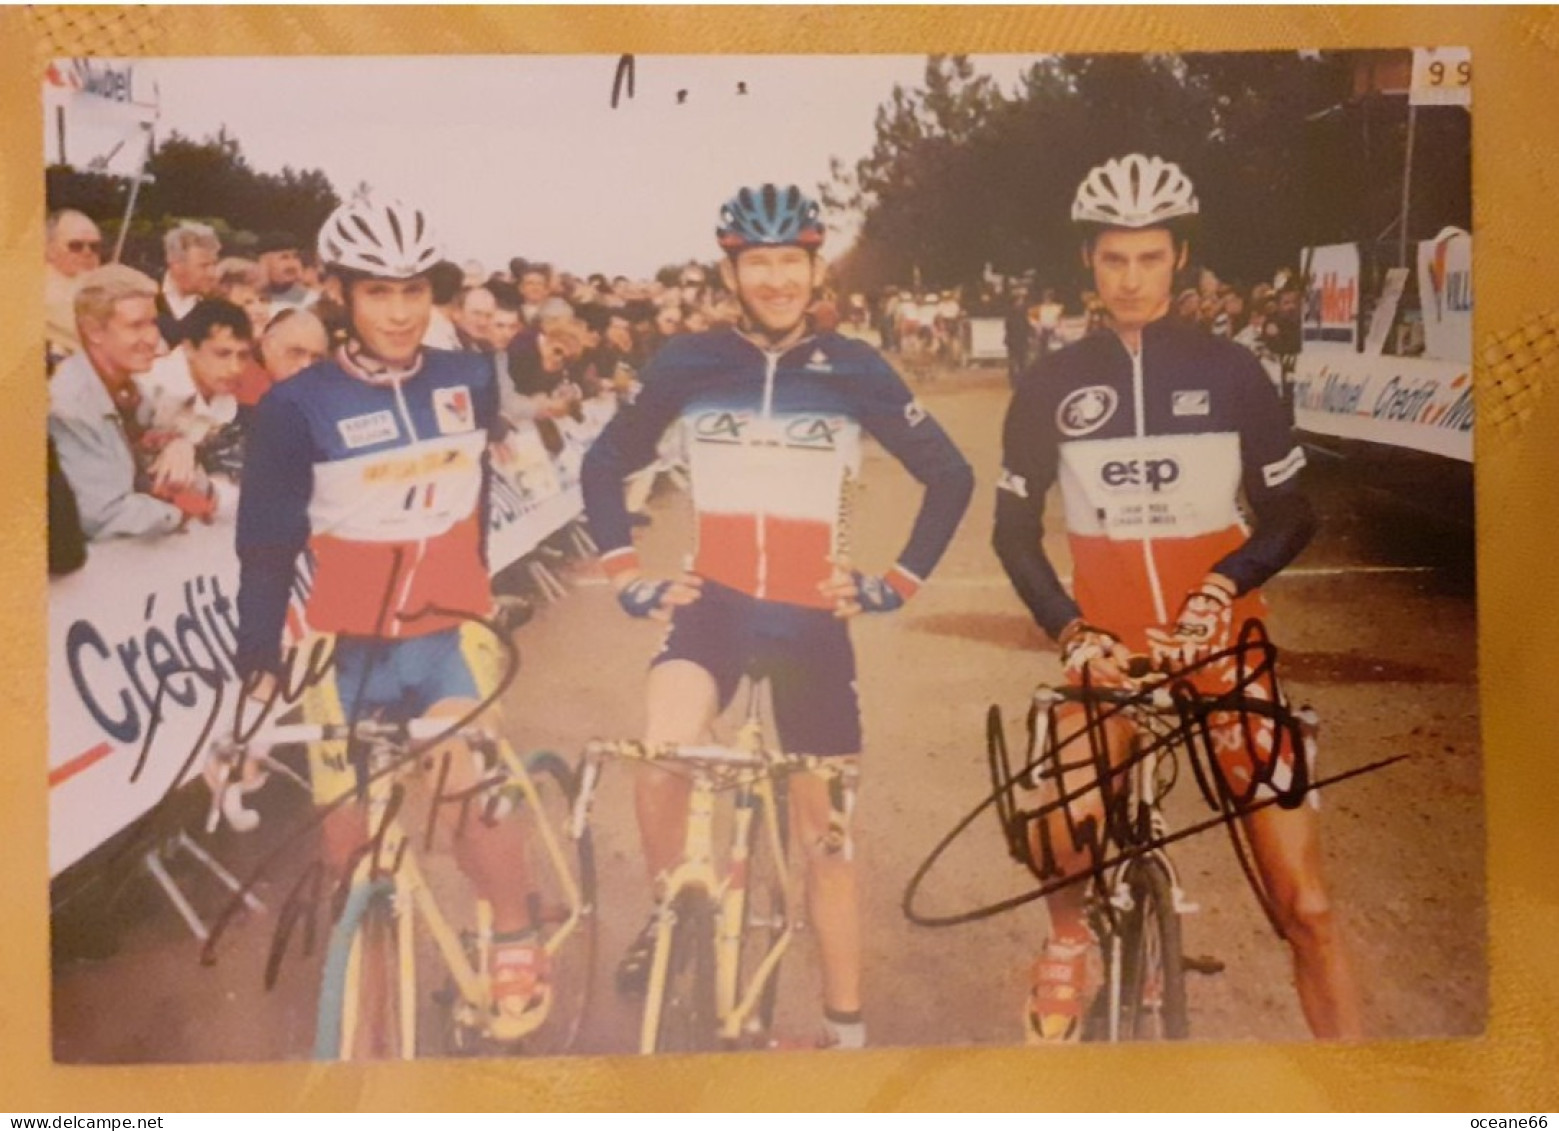 Autographes David Derepas Et Christophe Morel Avec François Simon Champions De France - Radsport